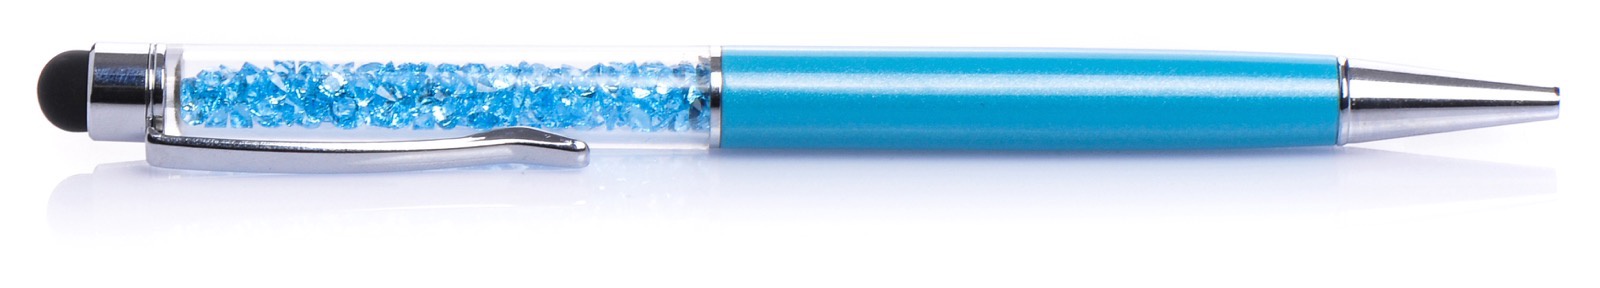 фото Стилус для мобильного телефона iNeez стилус-ручка blue емкостной с кристаллами, голубой